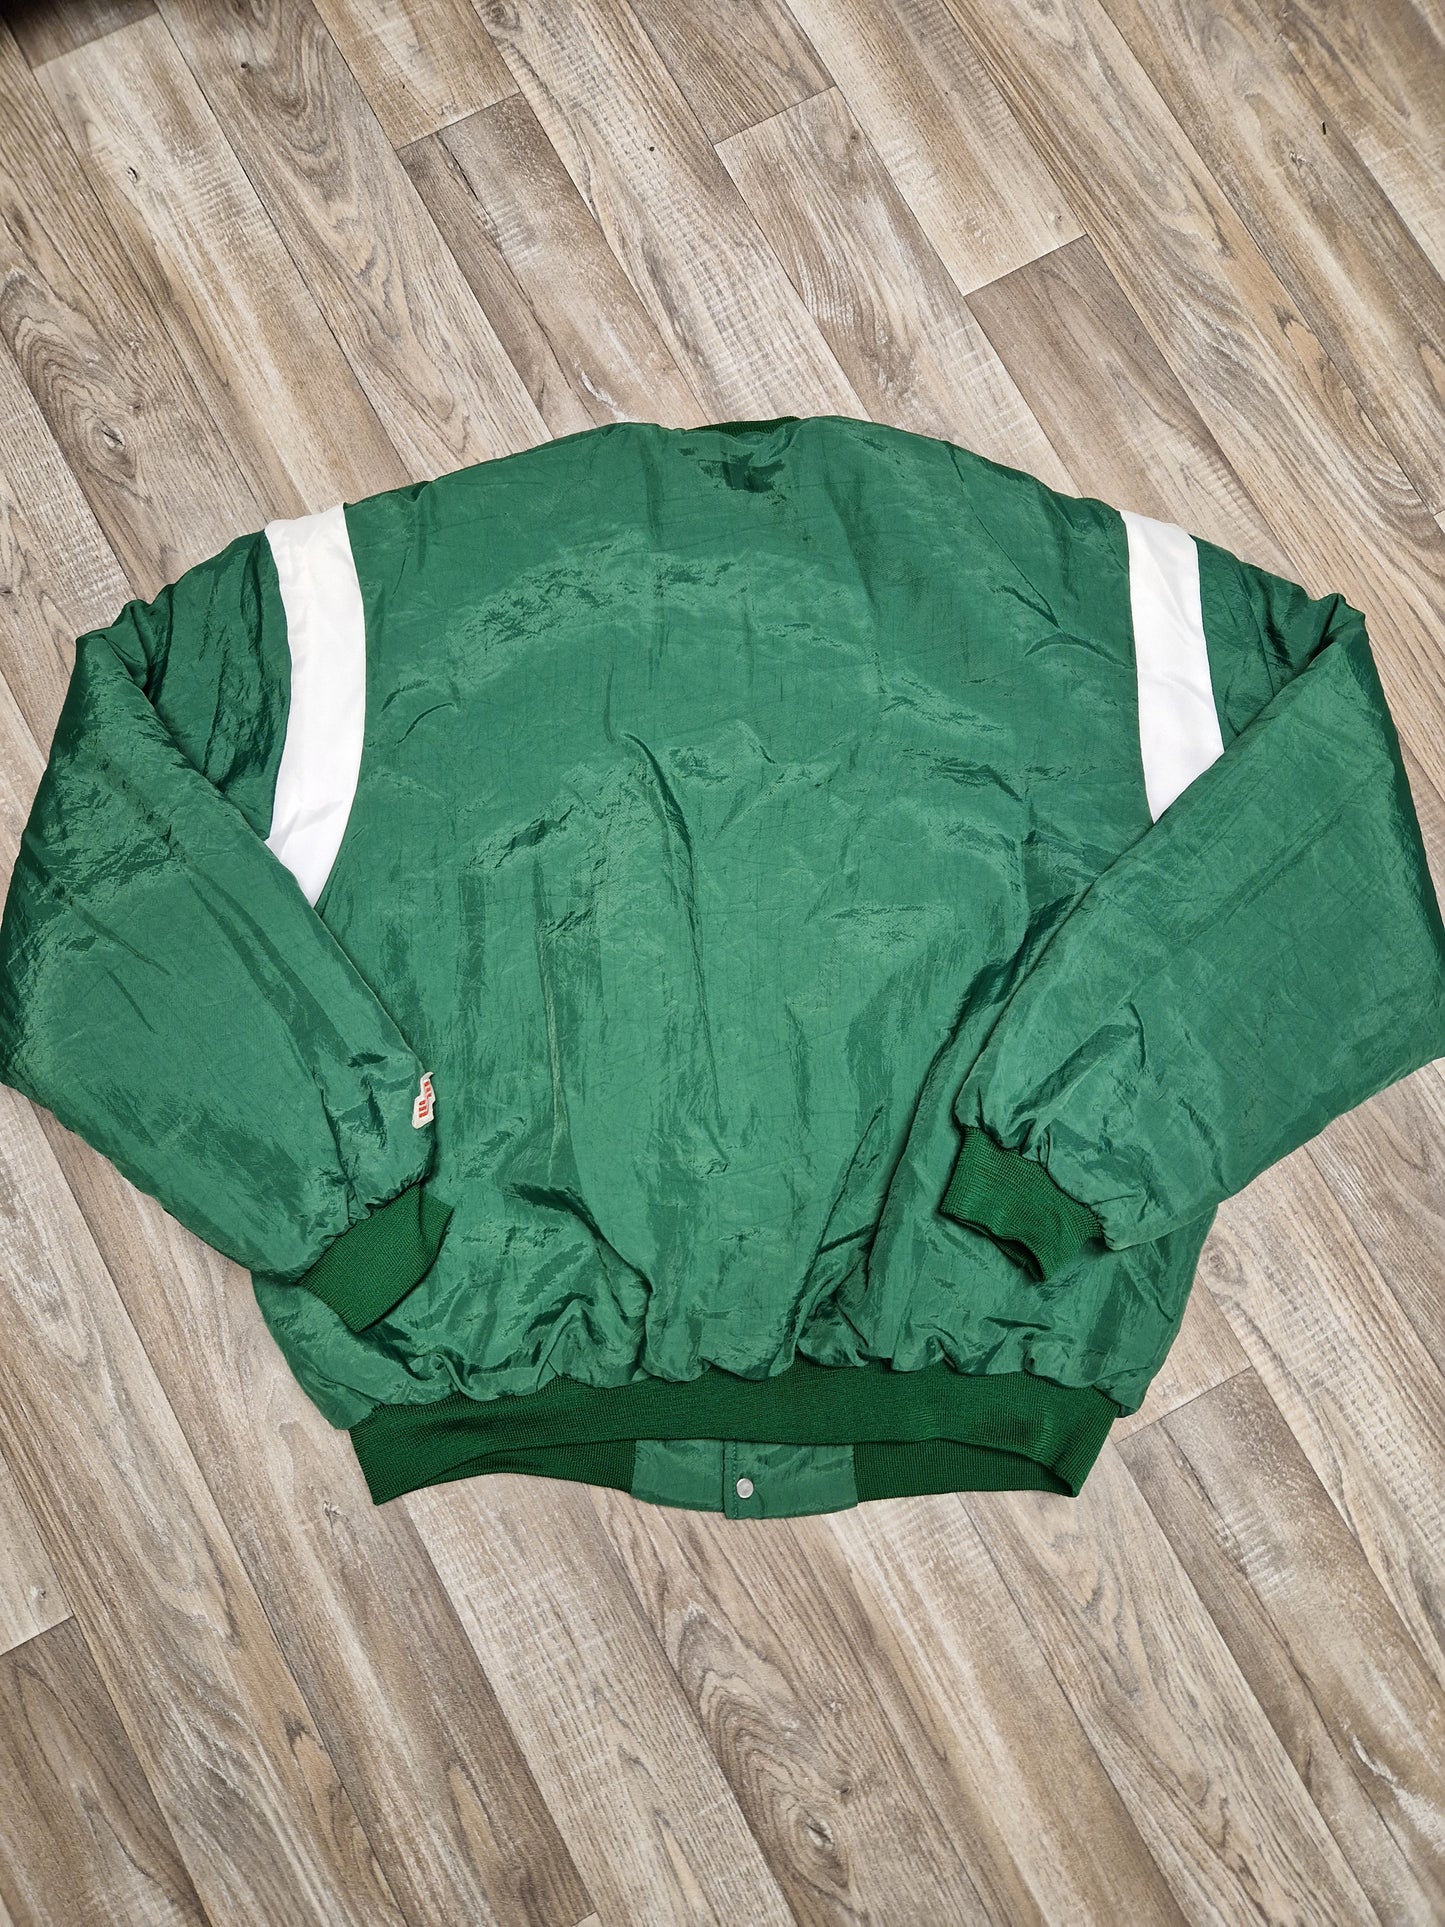 Boston Celtics Jacket Size XL